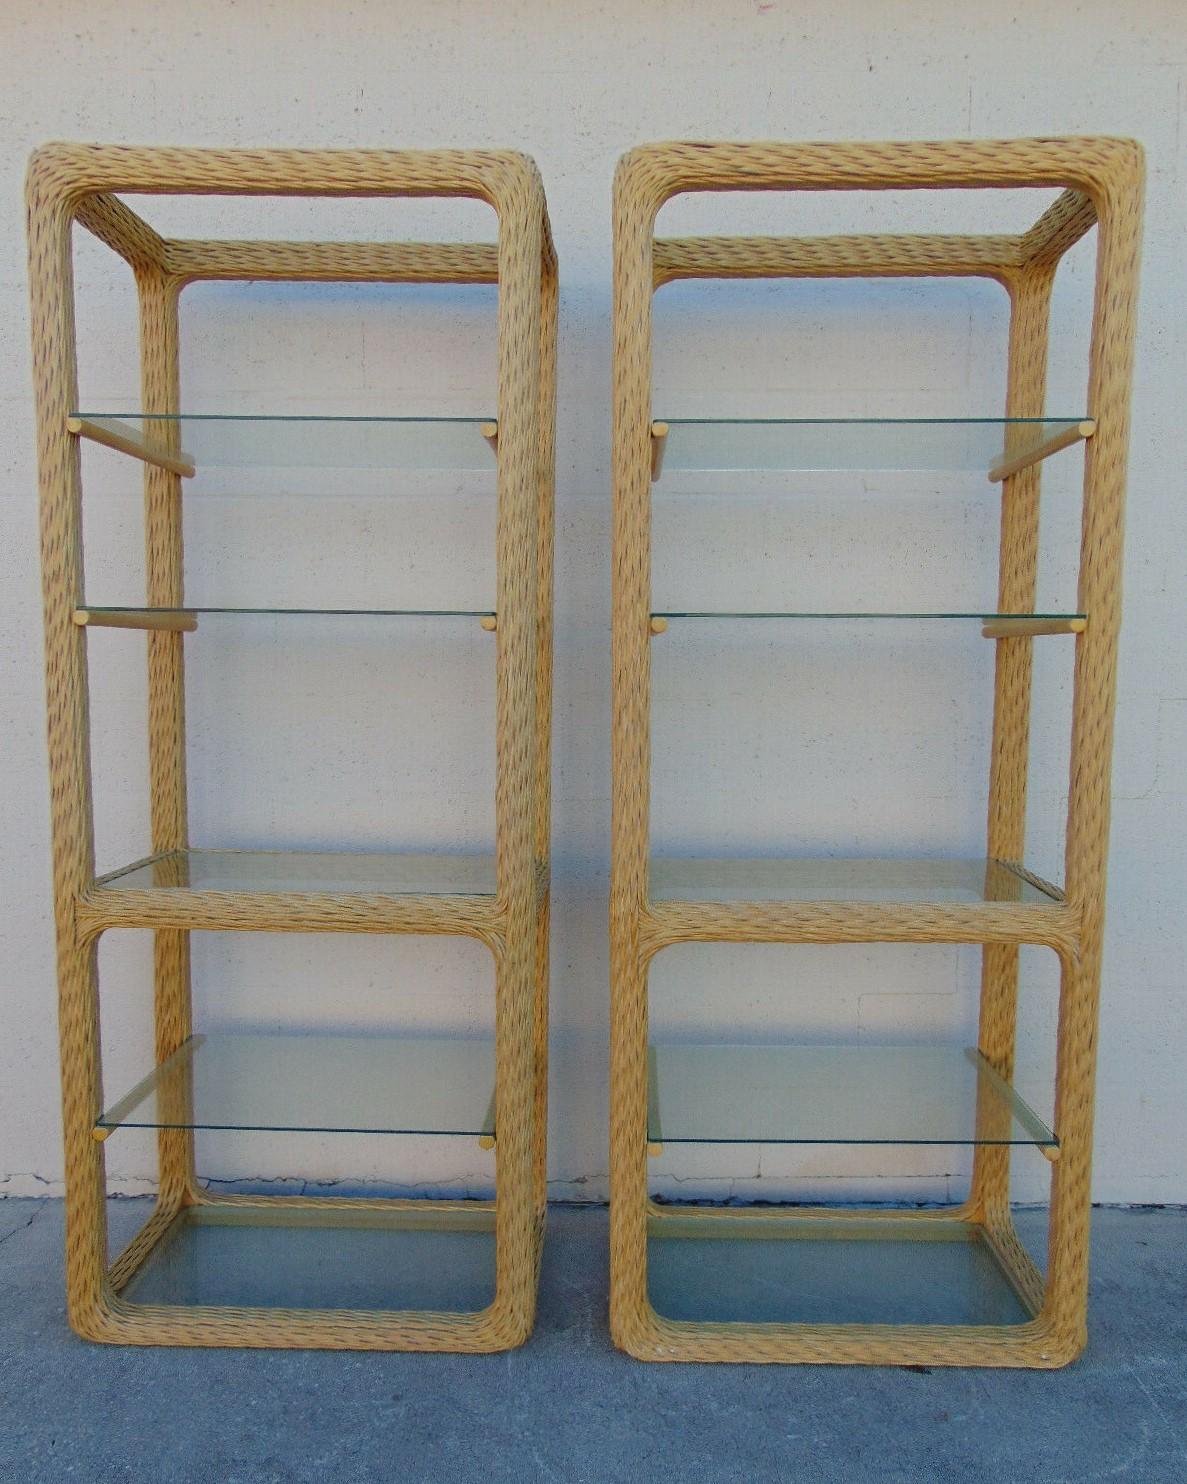 Ein Paar organische, moderne Etageren aus geflochtenem Rattan, um 1970. Diese fachmännisch handgefertigten Etageren mit jeweils fünf Glasböden in einem geflochtenen Rattanrahmen bieten einen praktischen und attraktiven Platz für Bücher, Objekte und